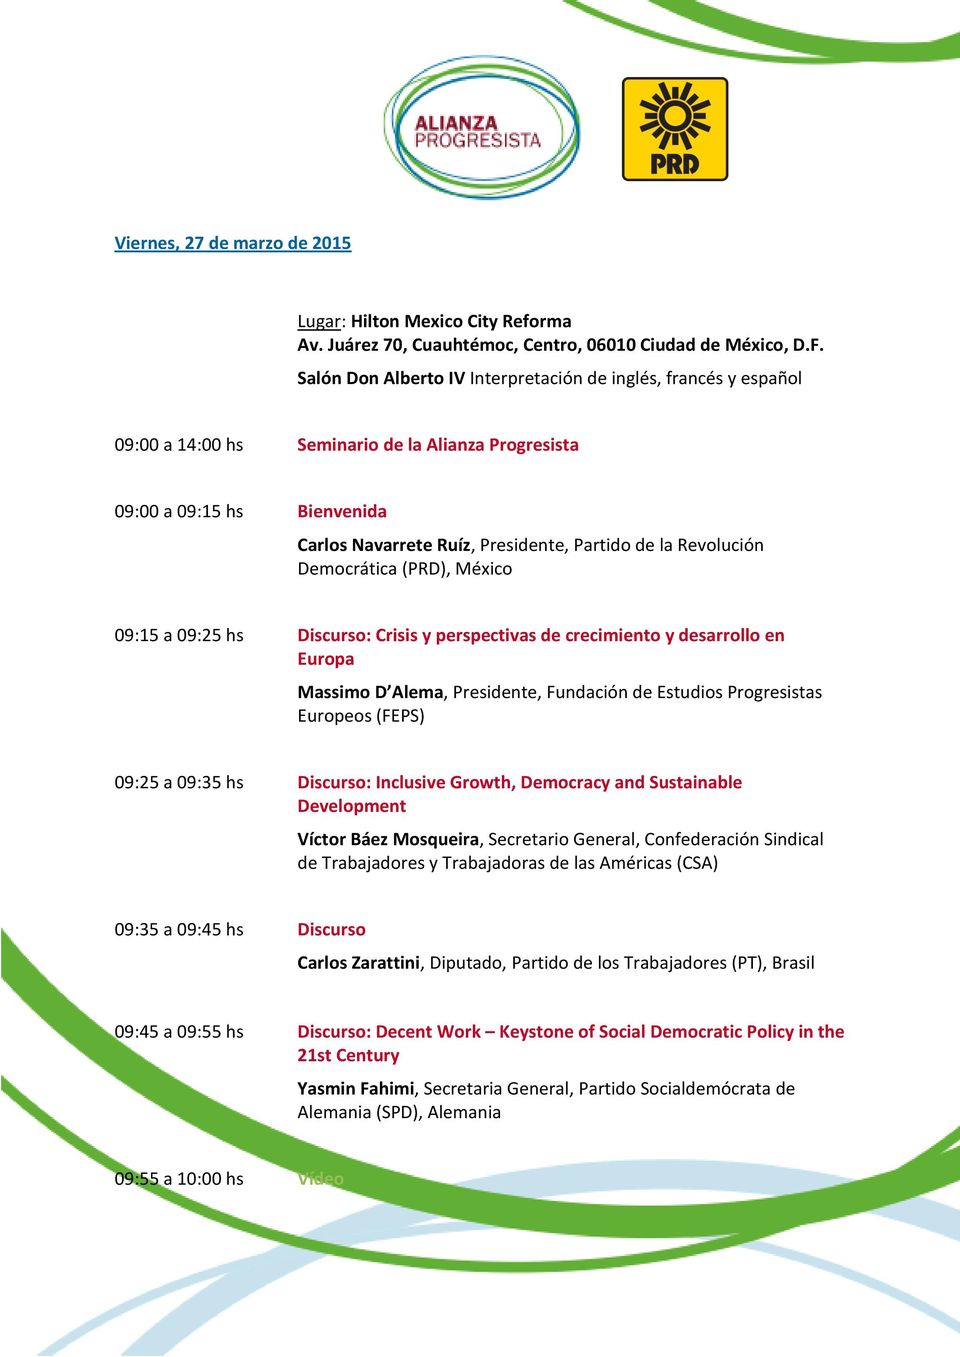 Revolución Democrática (PRD), México 09:15 a 09:25 hs Discurso: Crisis y perspectivas de crecimiento y desarrollo en Europa Massimo D Alema, Presidente, Fundación de Estudios Progresistas Europeos